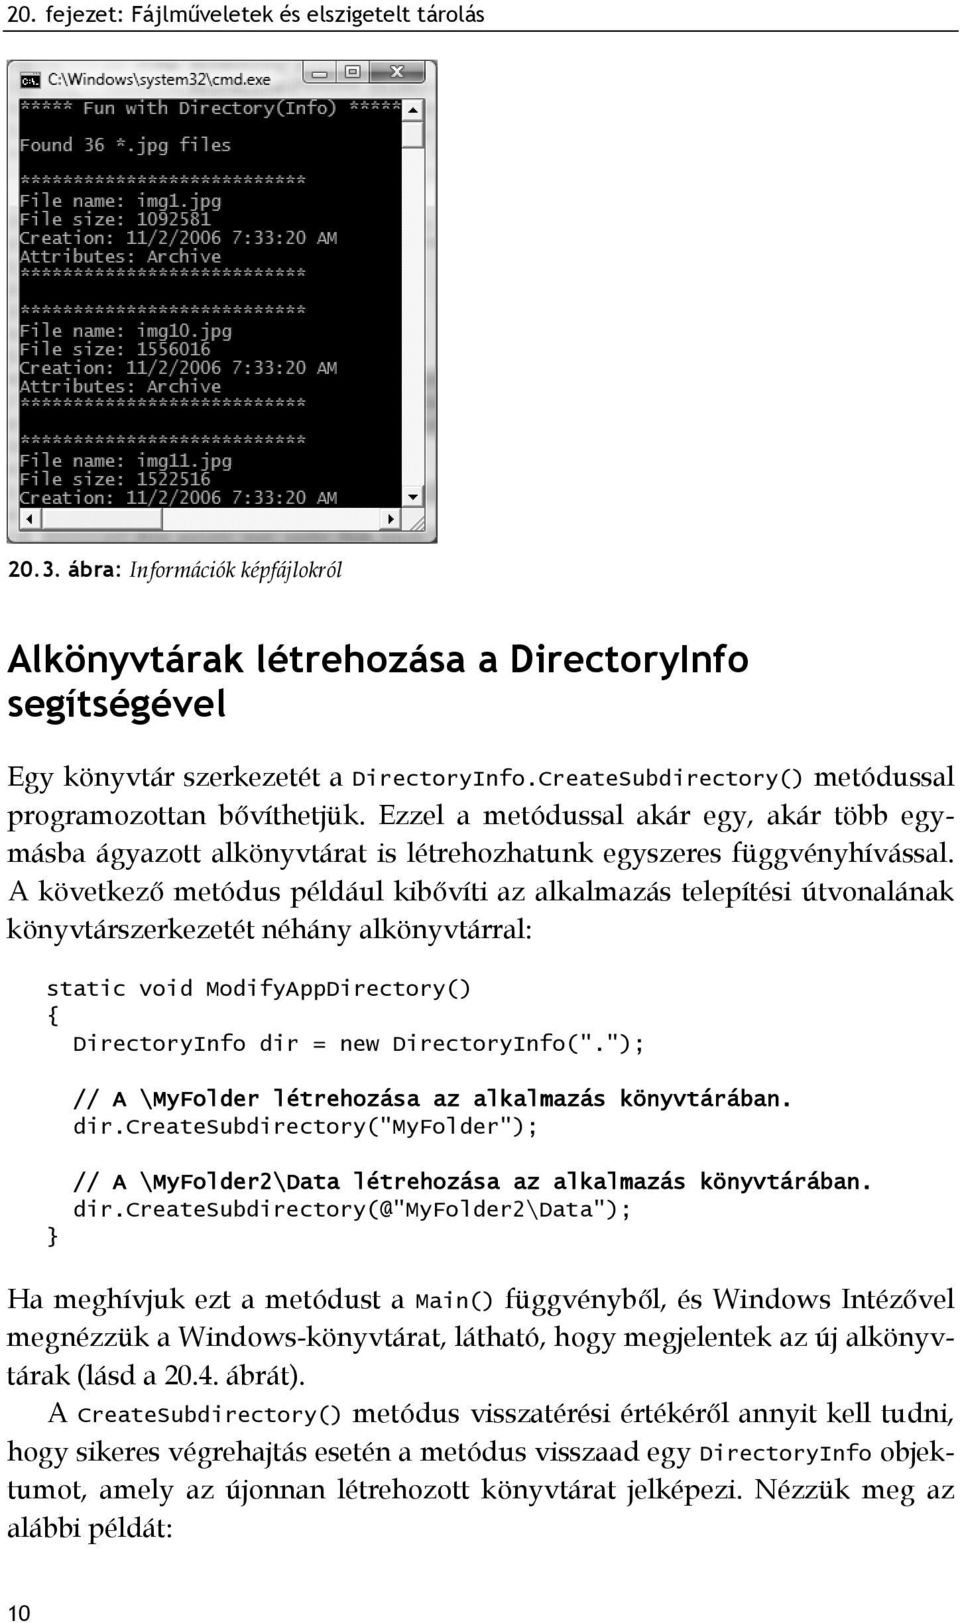 A következő metódus például kibővíti az alkalmazás telepítési útvonalának könyvtárszerkezetét néhány alkönyvtárral: static void ModifyAppDirectory() DirectoryInfo dir = new DirectoryInfo(".